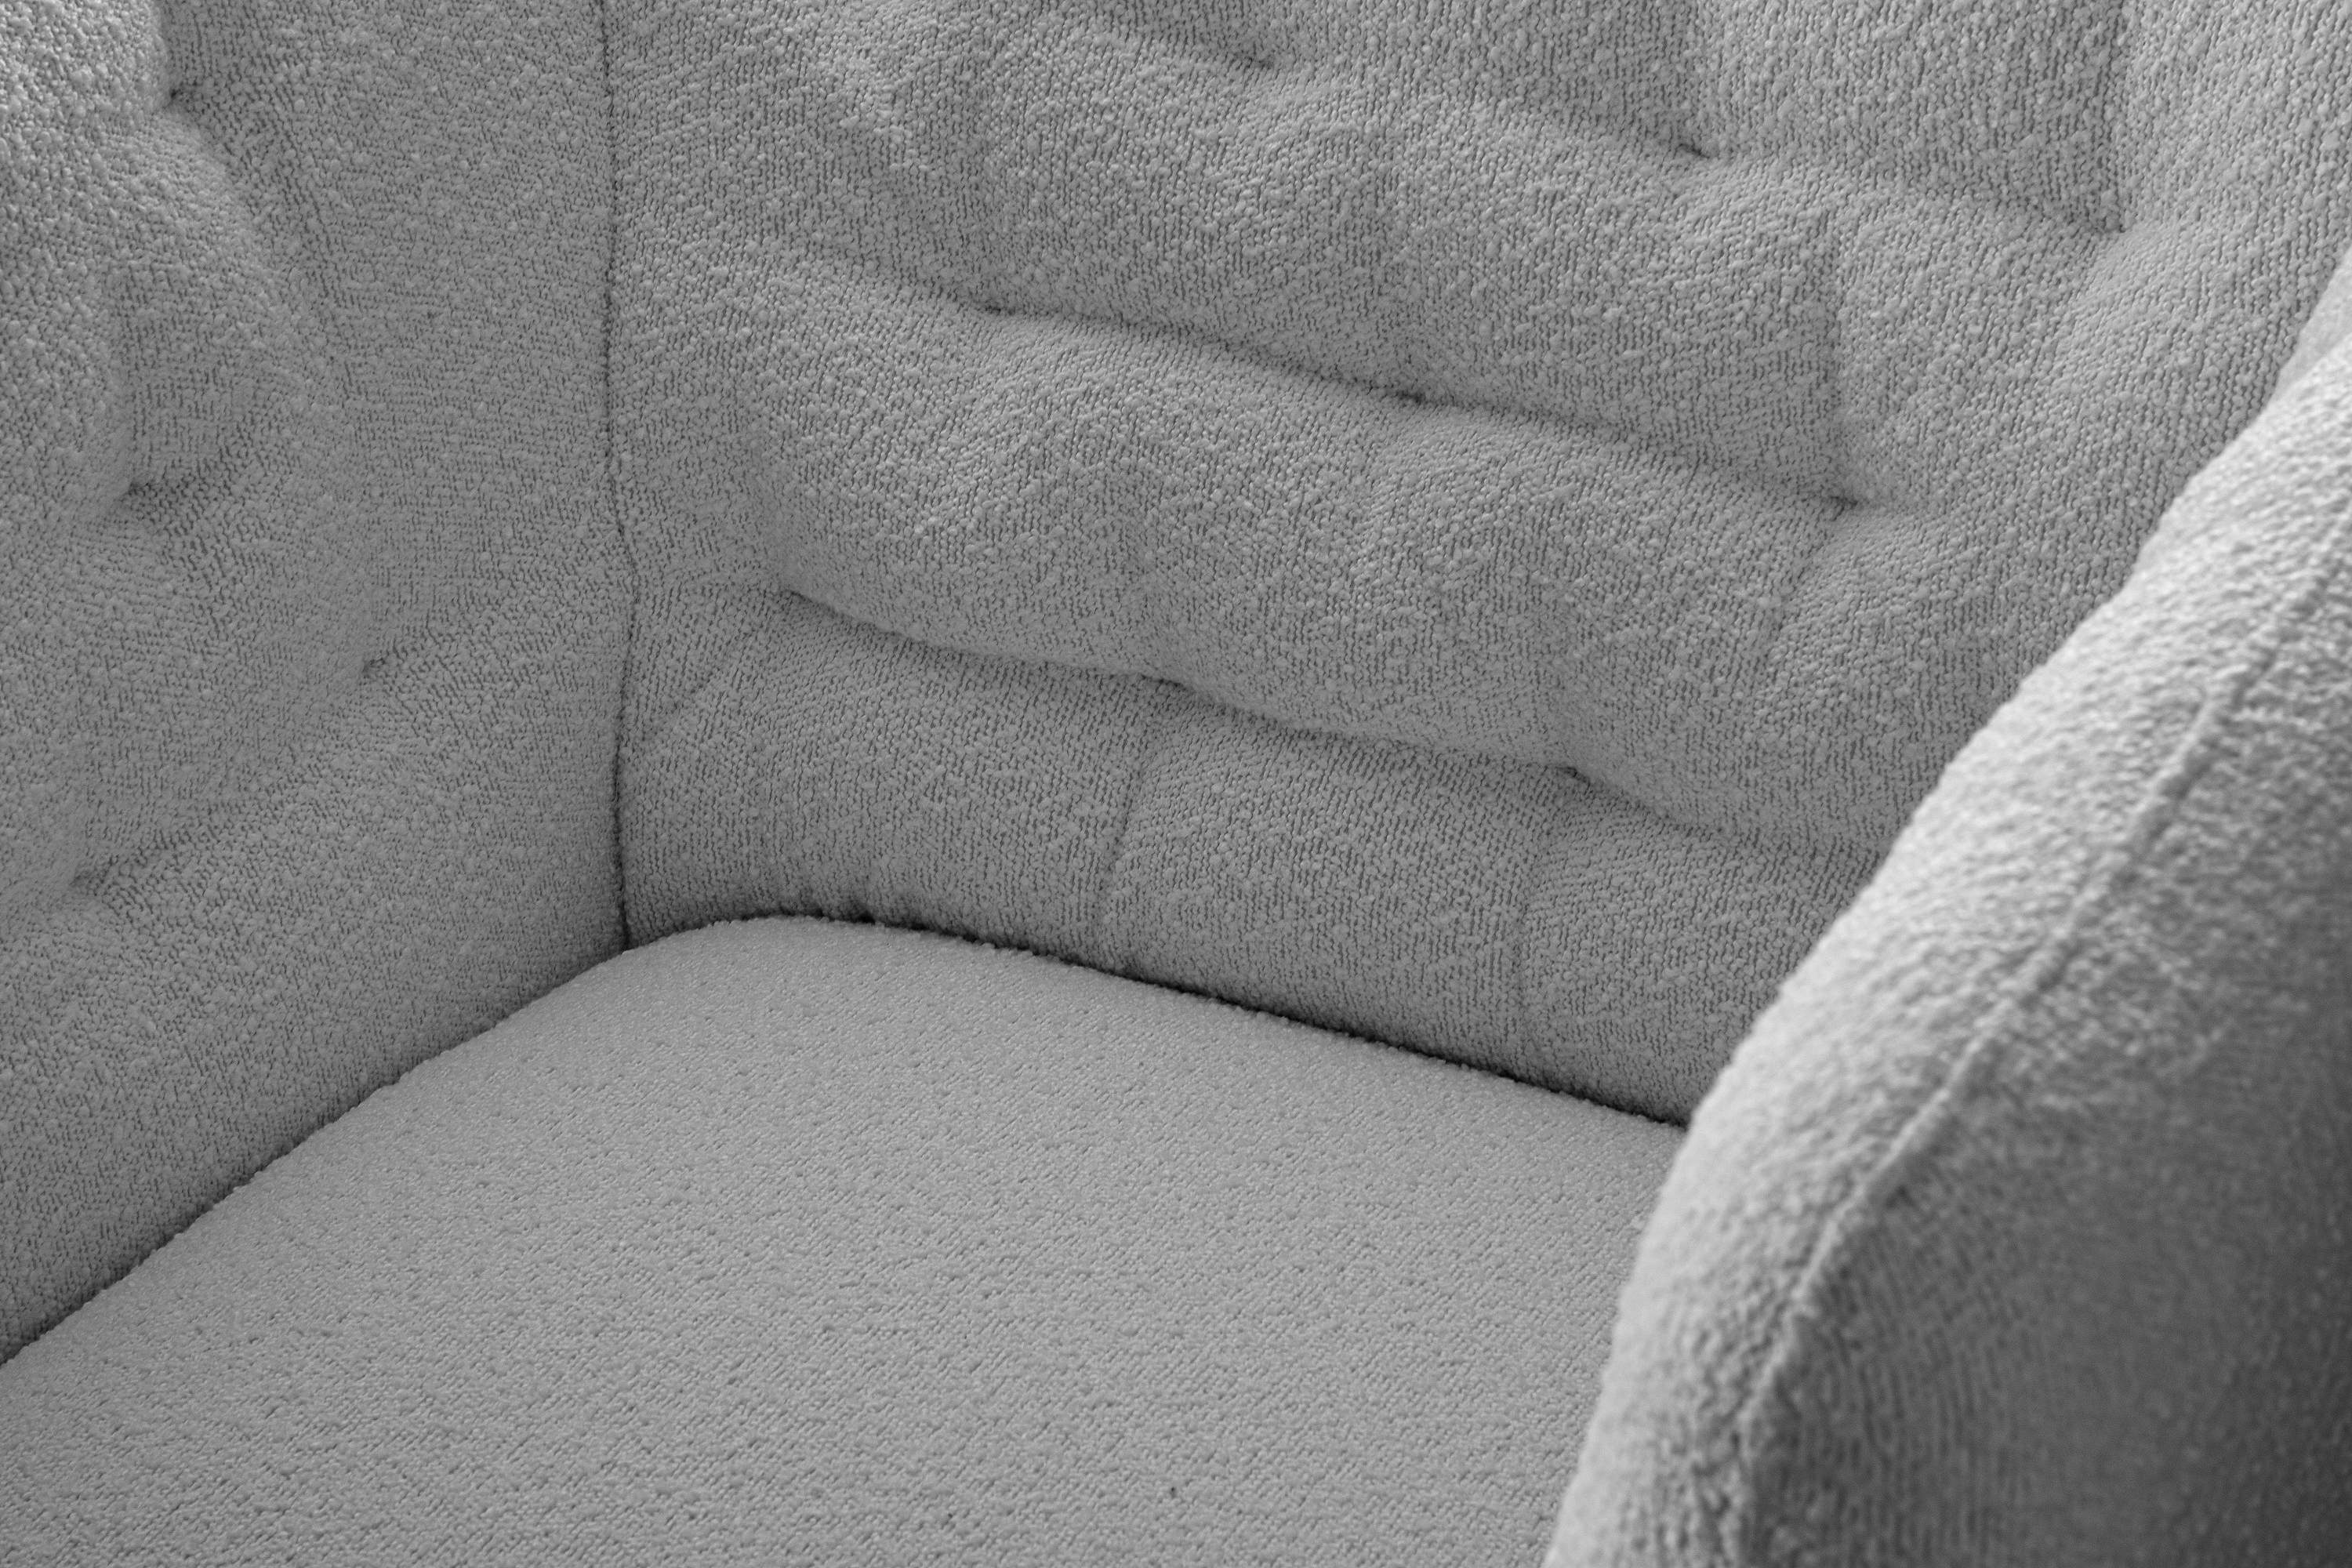 CORDI hellgrau Sessel Konsimo Sessel, Metallfüßen, gewellte | hellgrau Sitz im auf und Schaumstoff hohen Feder Gesteppter